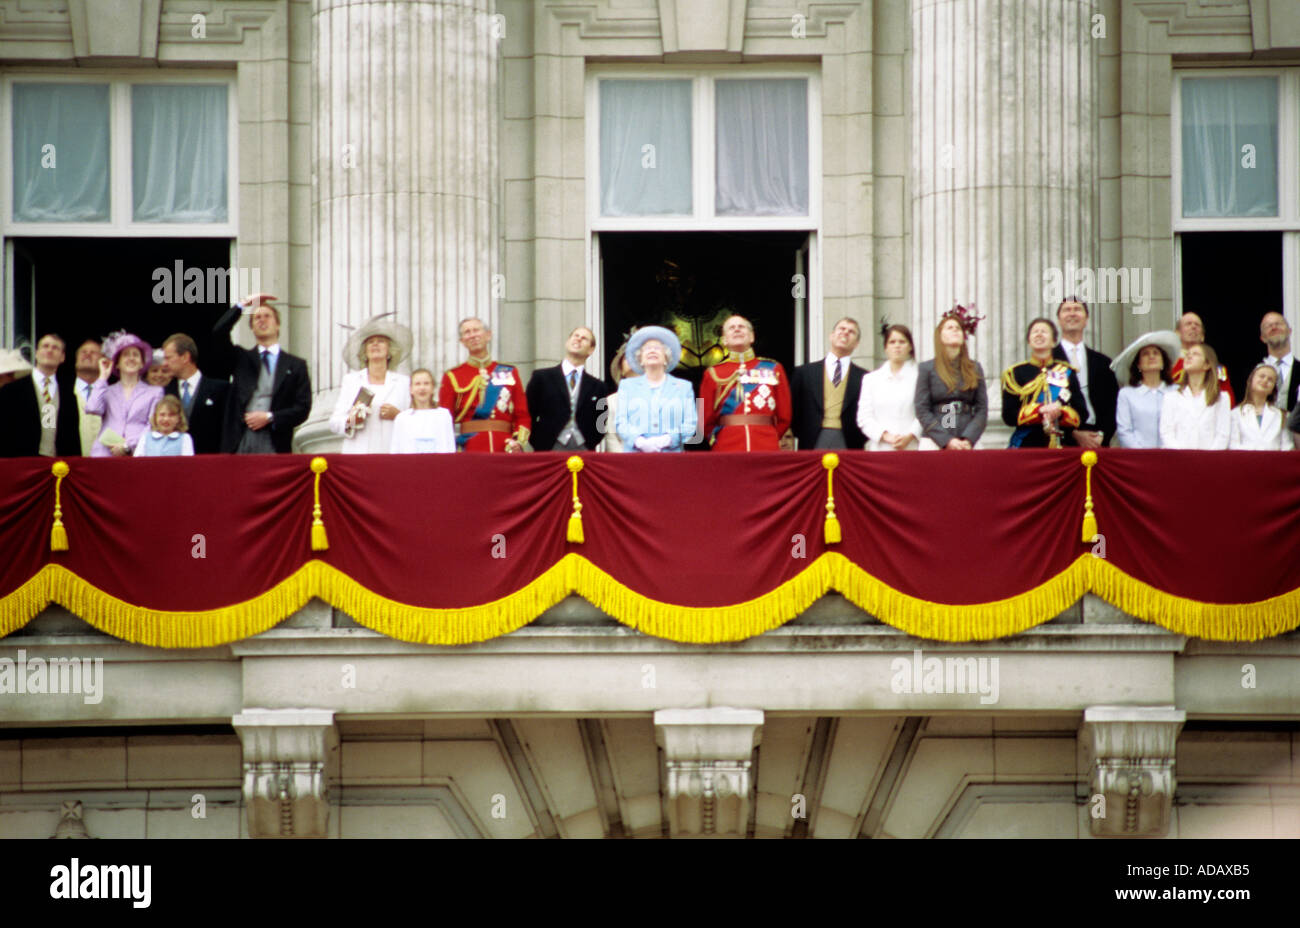 La Reine et la famille royale sur le balcon de Buckingham Palace Londres Angleterre Royaume-Uni Banque D'Images